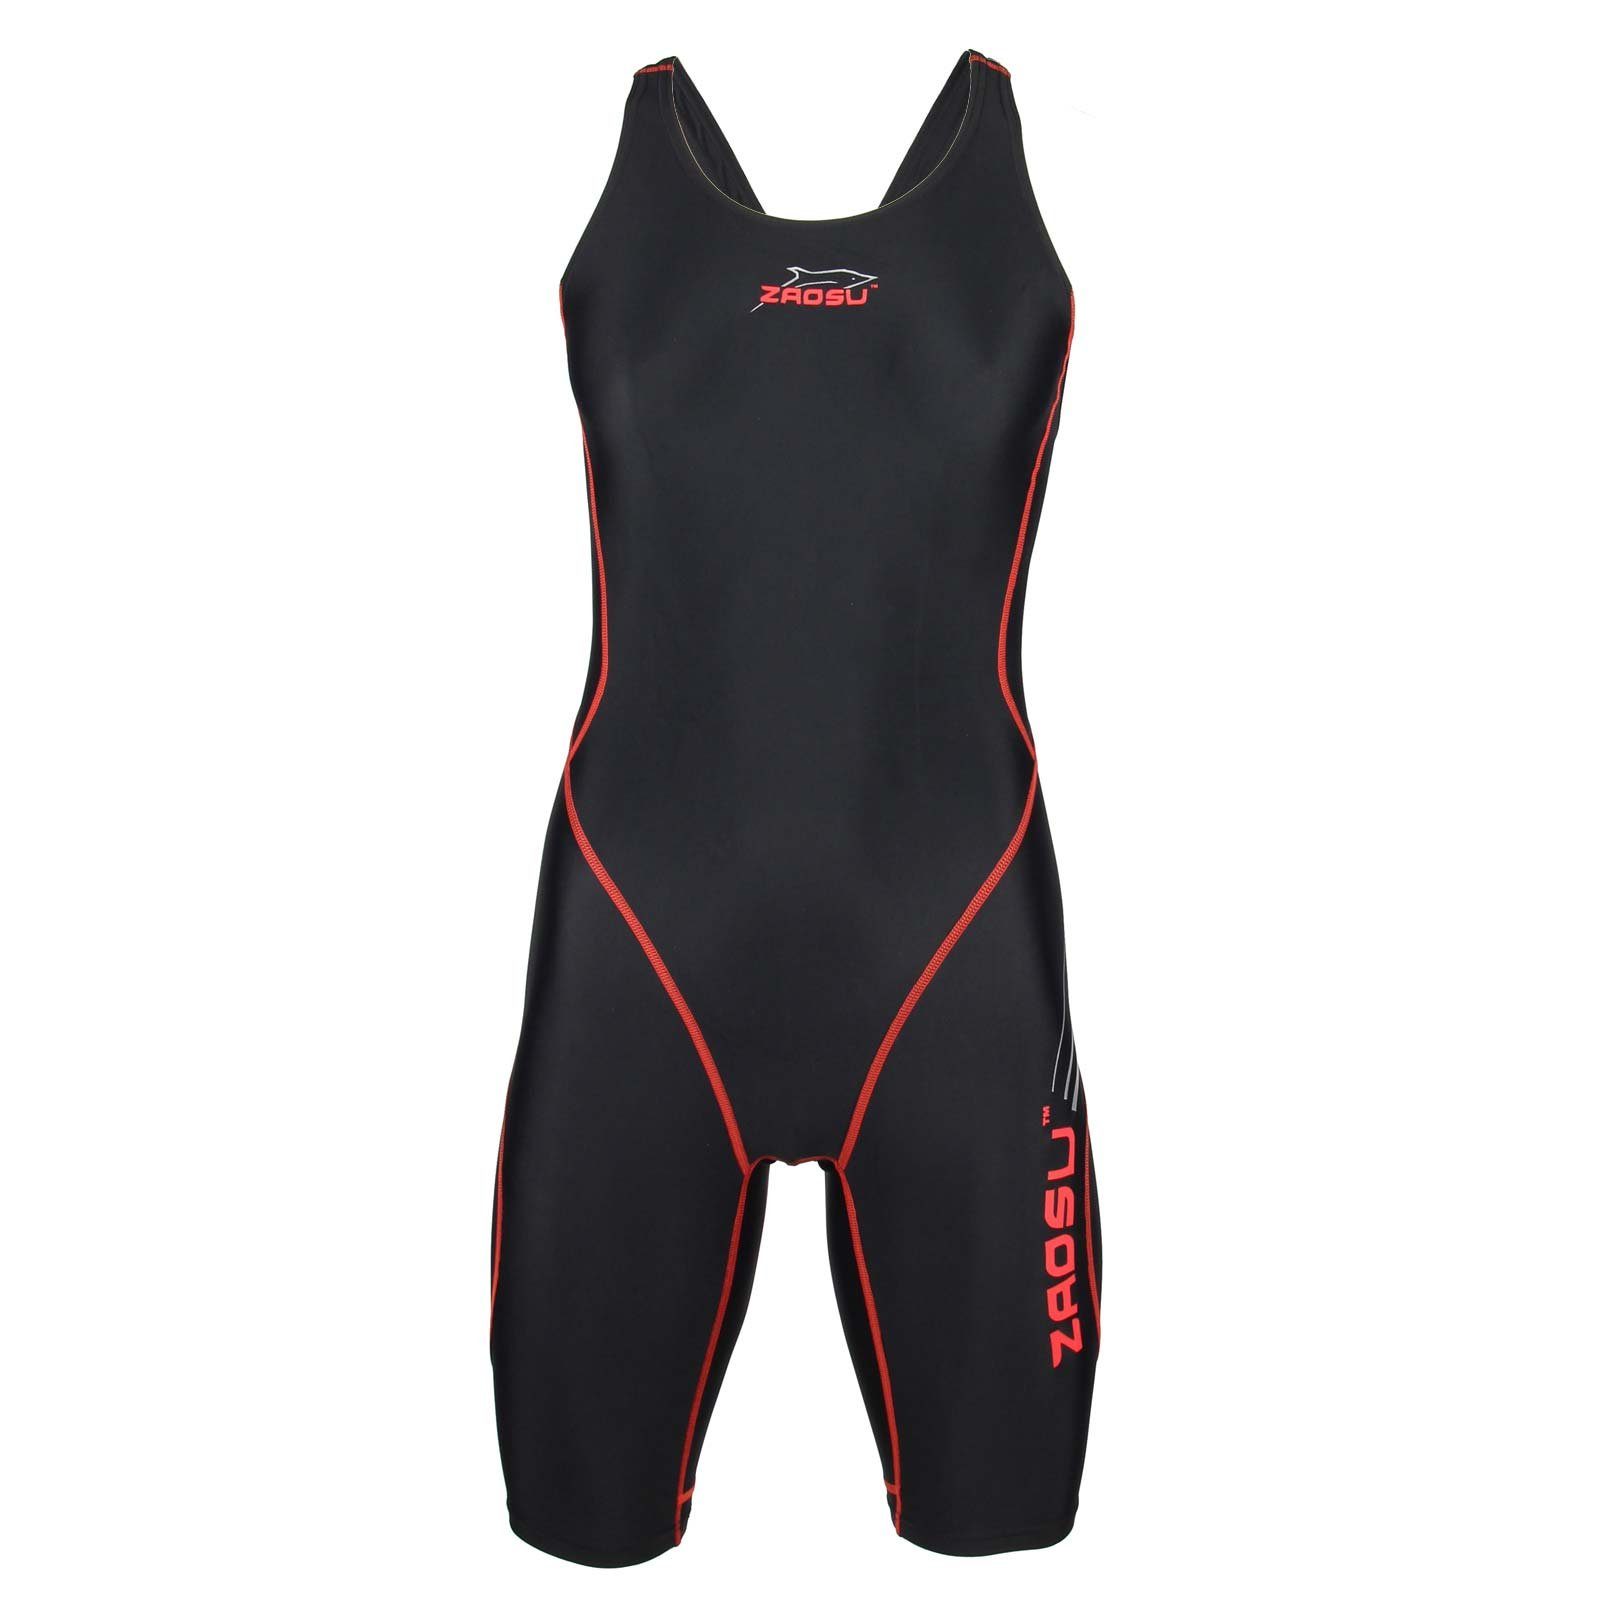 Z-Black schwarz/rot ZAOSU Wettkampf Schwimmanzug Schwimmanzug